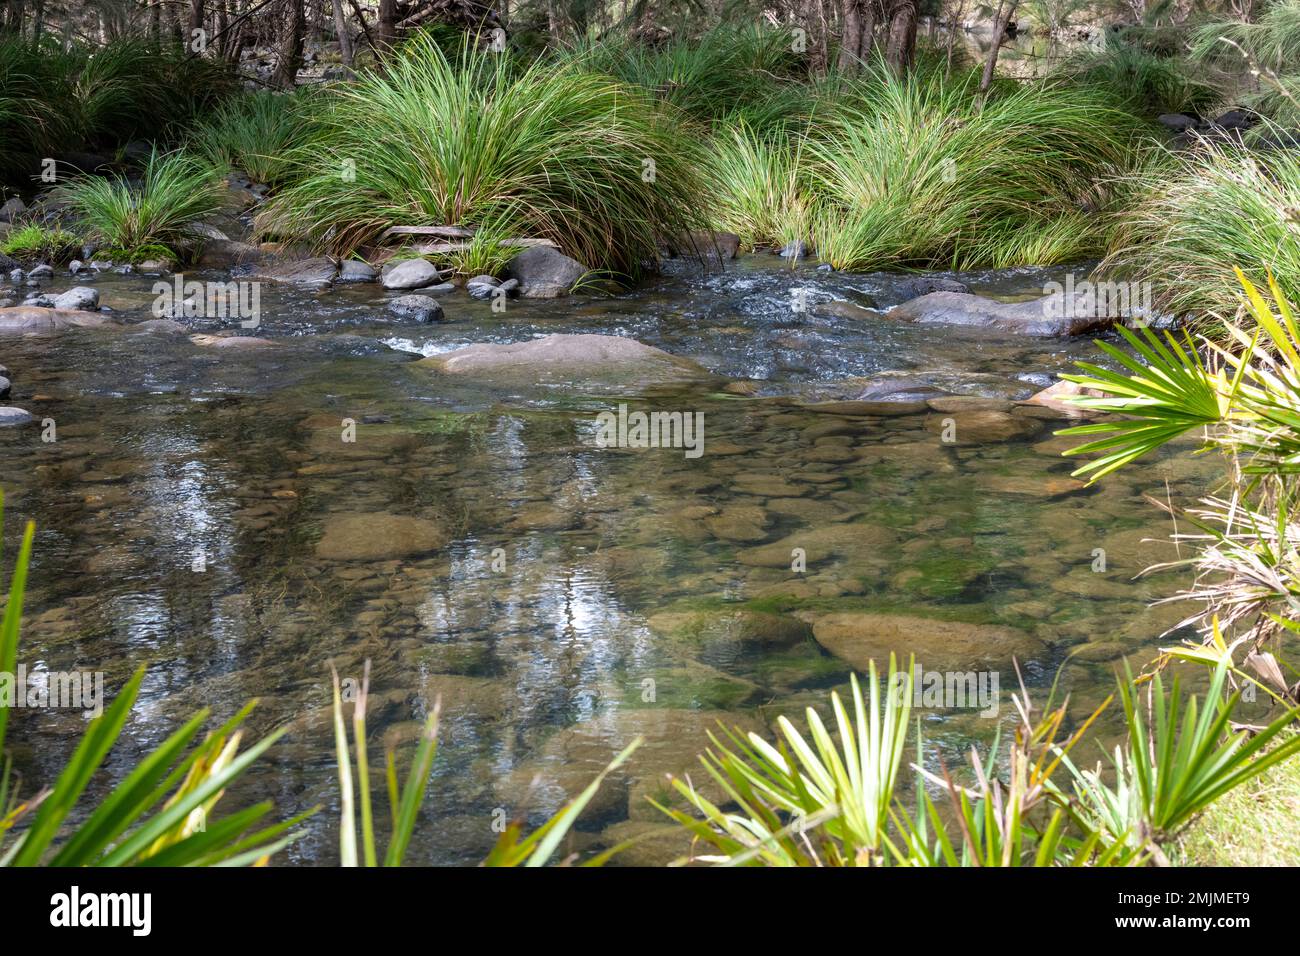 Belle eau claire qui coule dans un ruisseau bordé d'herbe au parc national de Carnarvon dans le Queensland, en Australie Banque D'Images